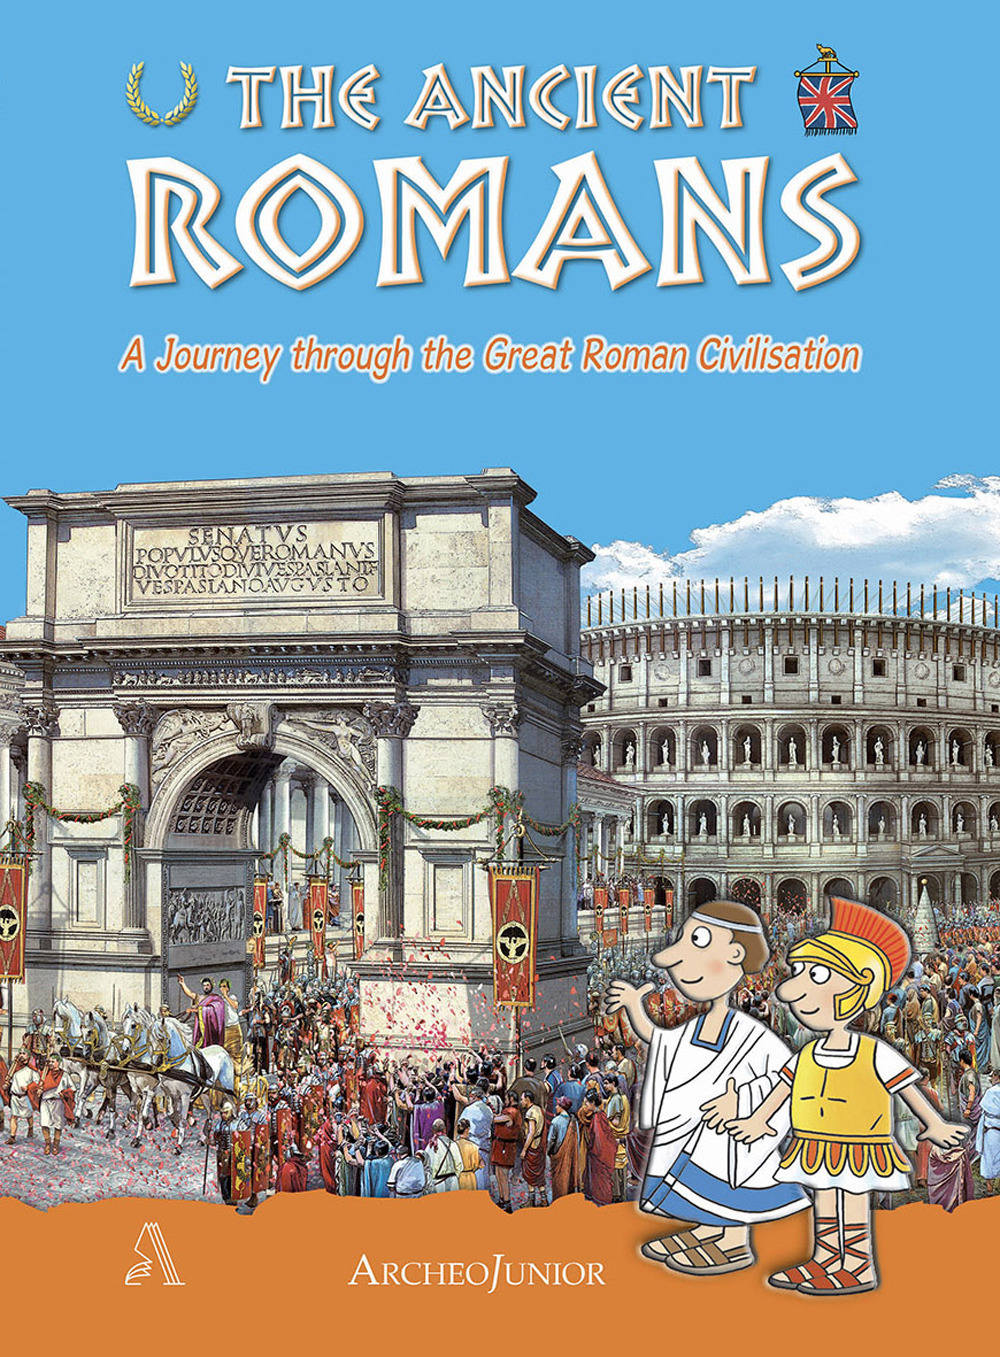 Gli antichi romani. Un viaggio nella grande civiltà romana. Ediz. inglese